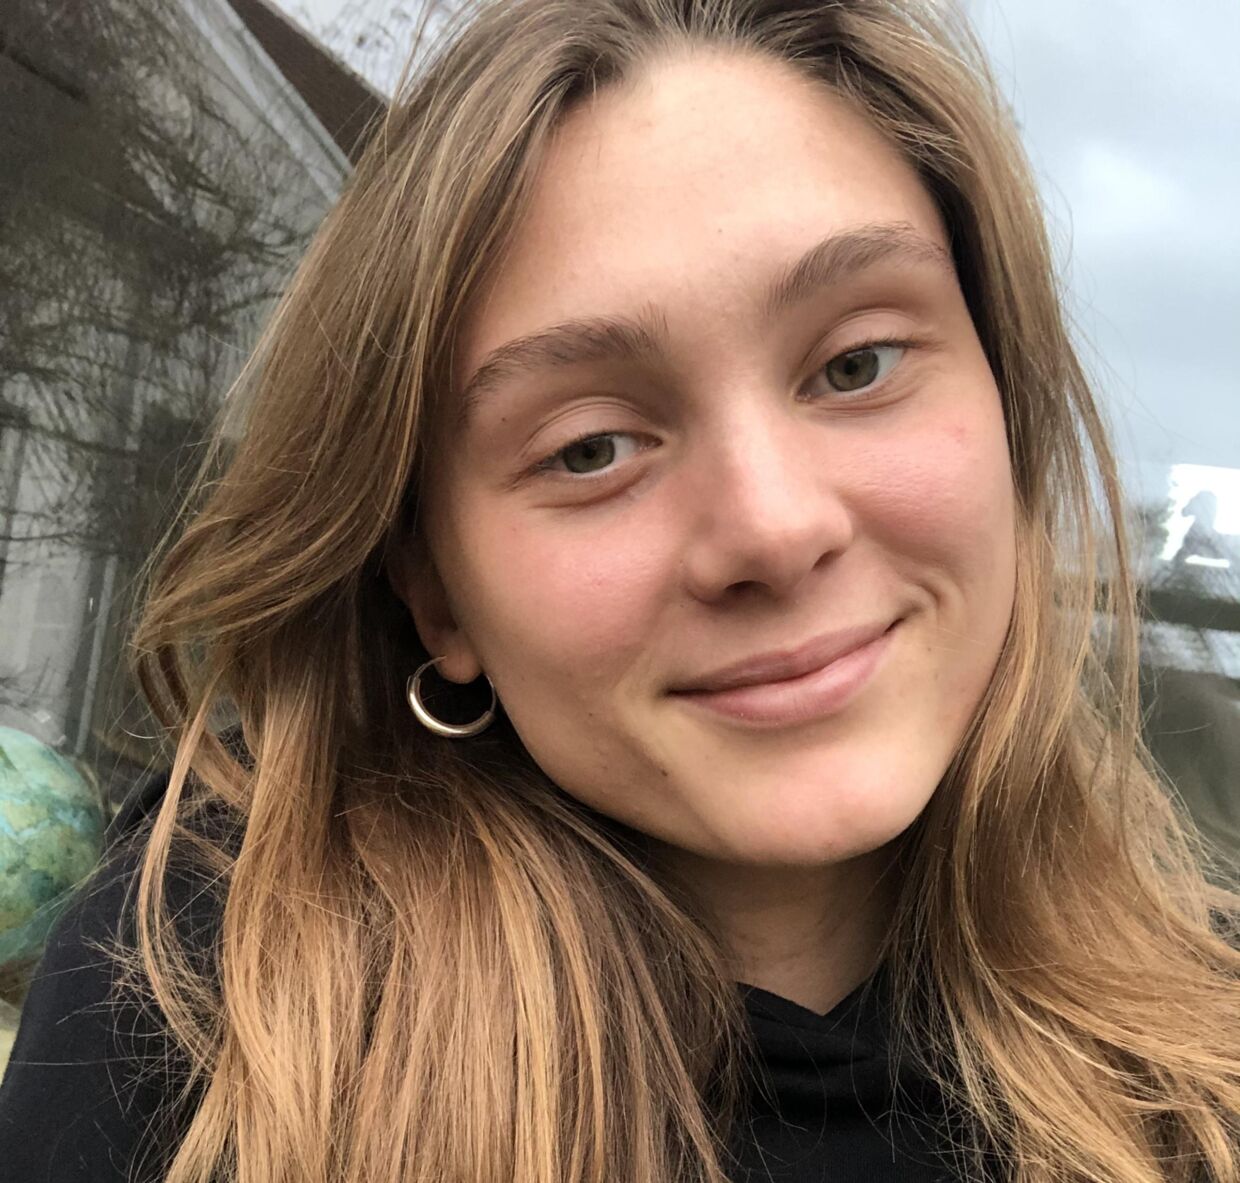 22-årige Elsa Fristedt fra Sverige mistede både bolig i København, fordi hun havde opsagt sin gamle lejlighed, og hele sin opsparing. Forsikringen dækker ikke, så hun håber, at politiet kan finde udlejeren.